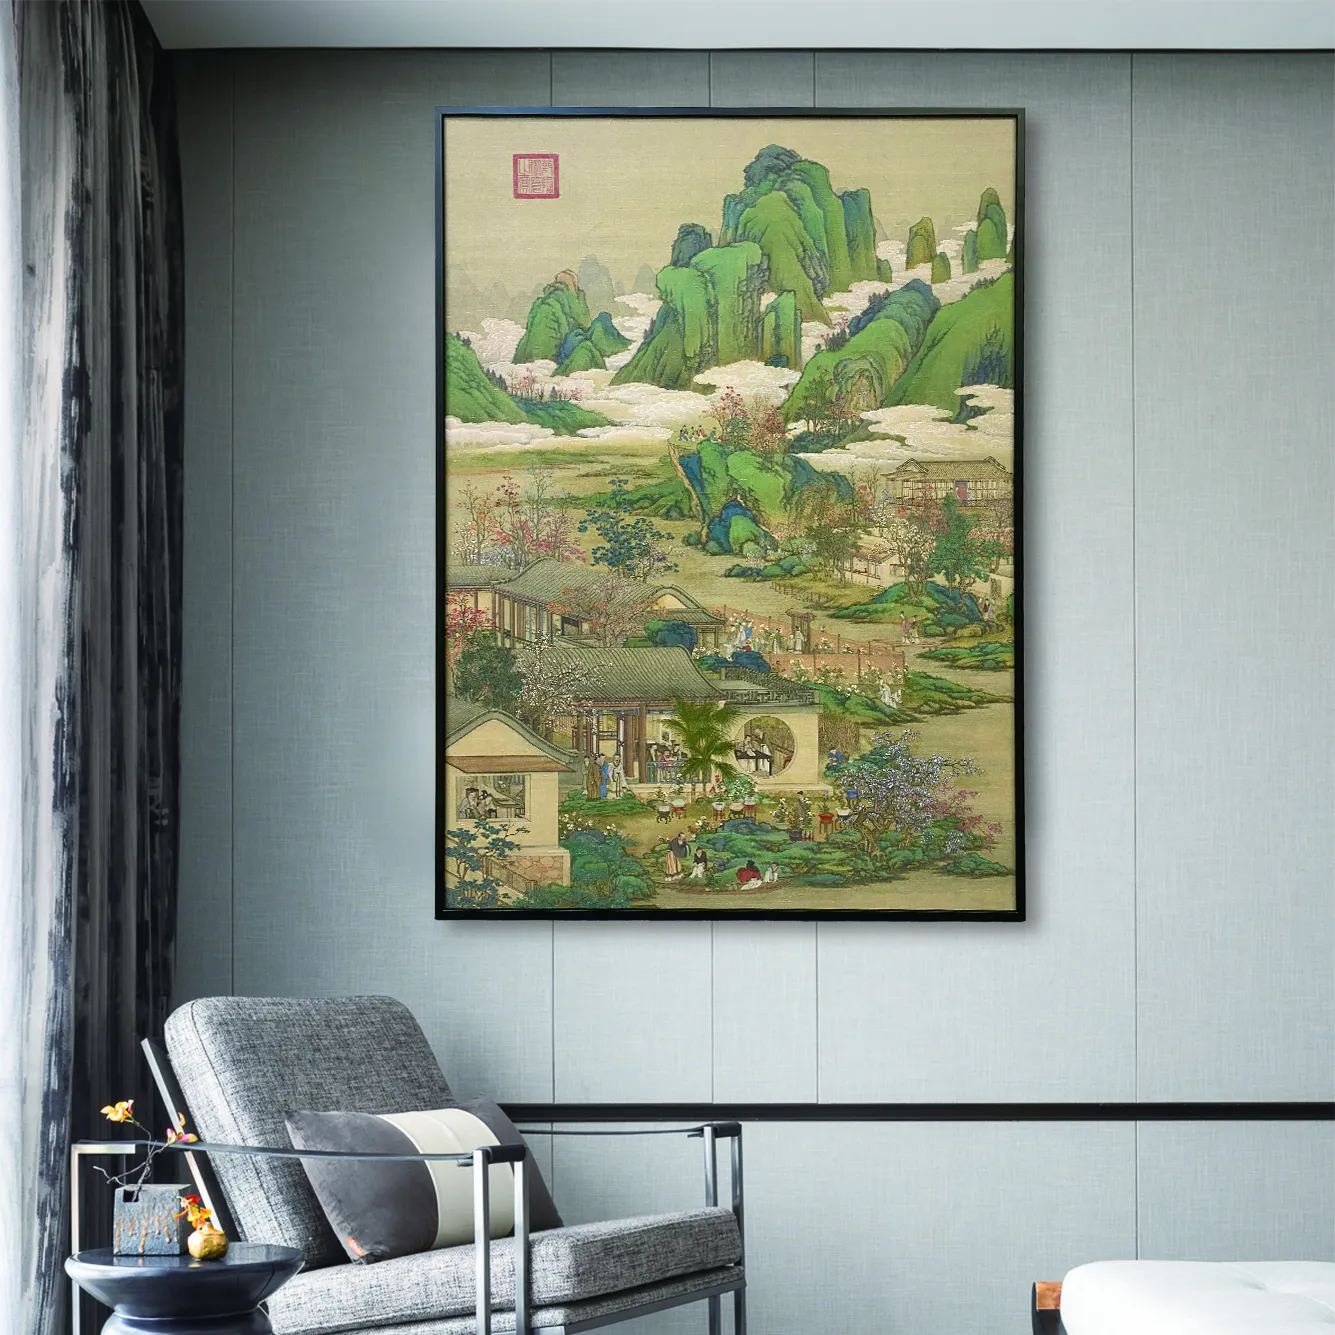 لوحة بانوراما للمناظر الطبيعية الجبلية والأنهار رسم بإطار وإطار مطبوع رسم تراثي صيني لتزيين المنزل